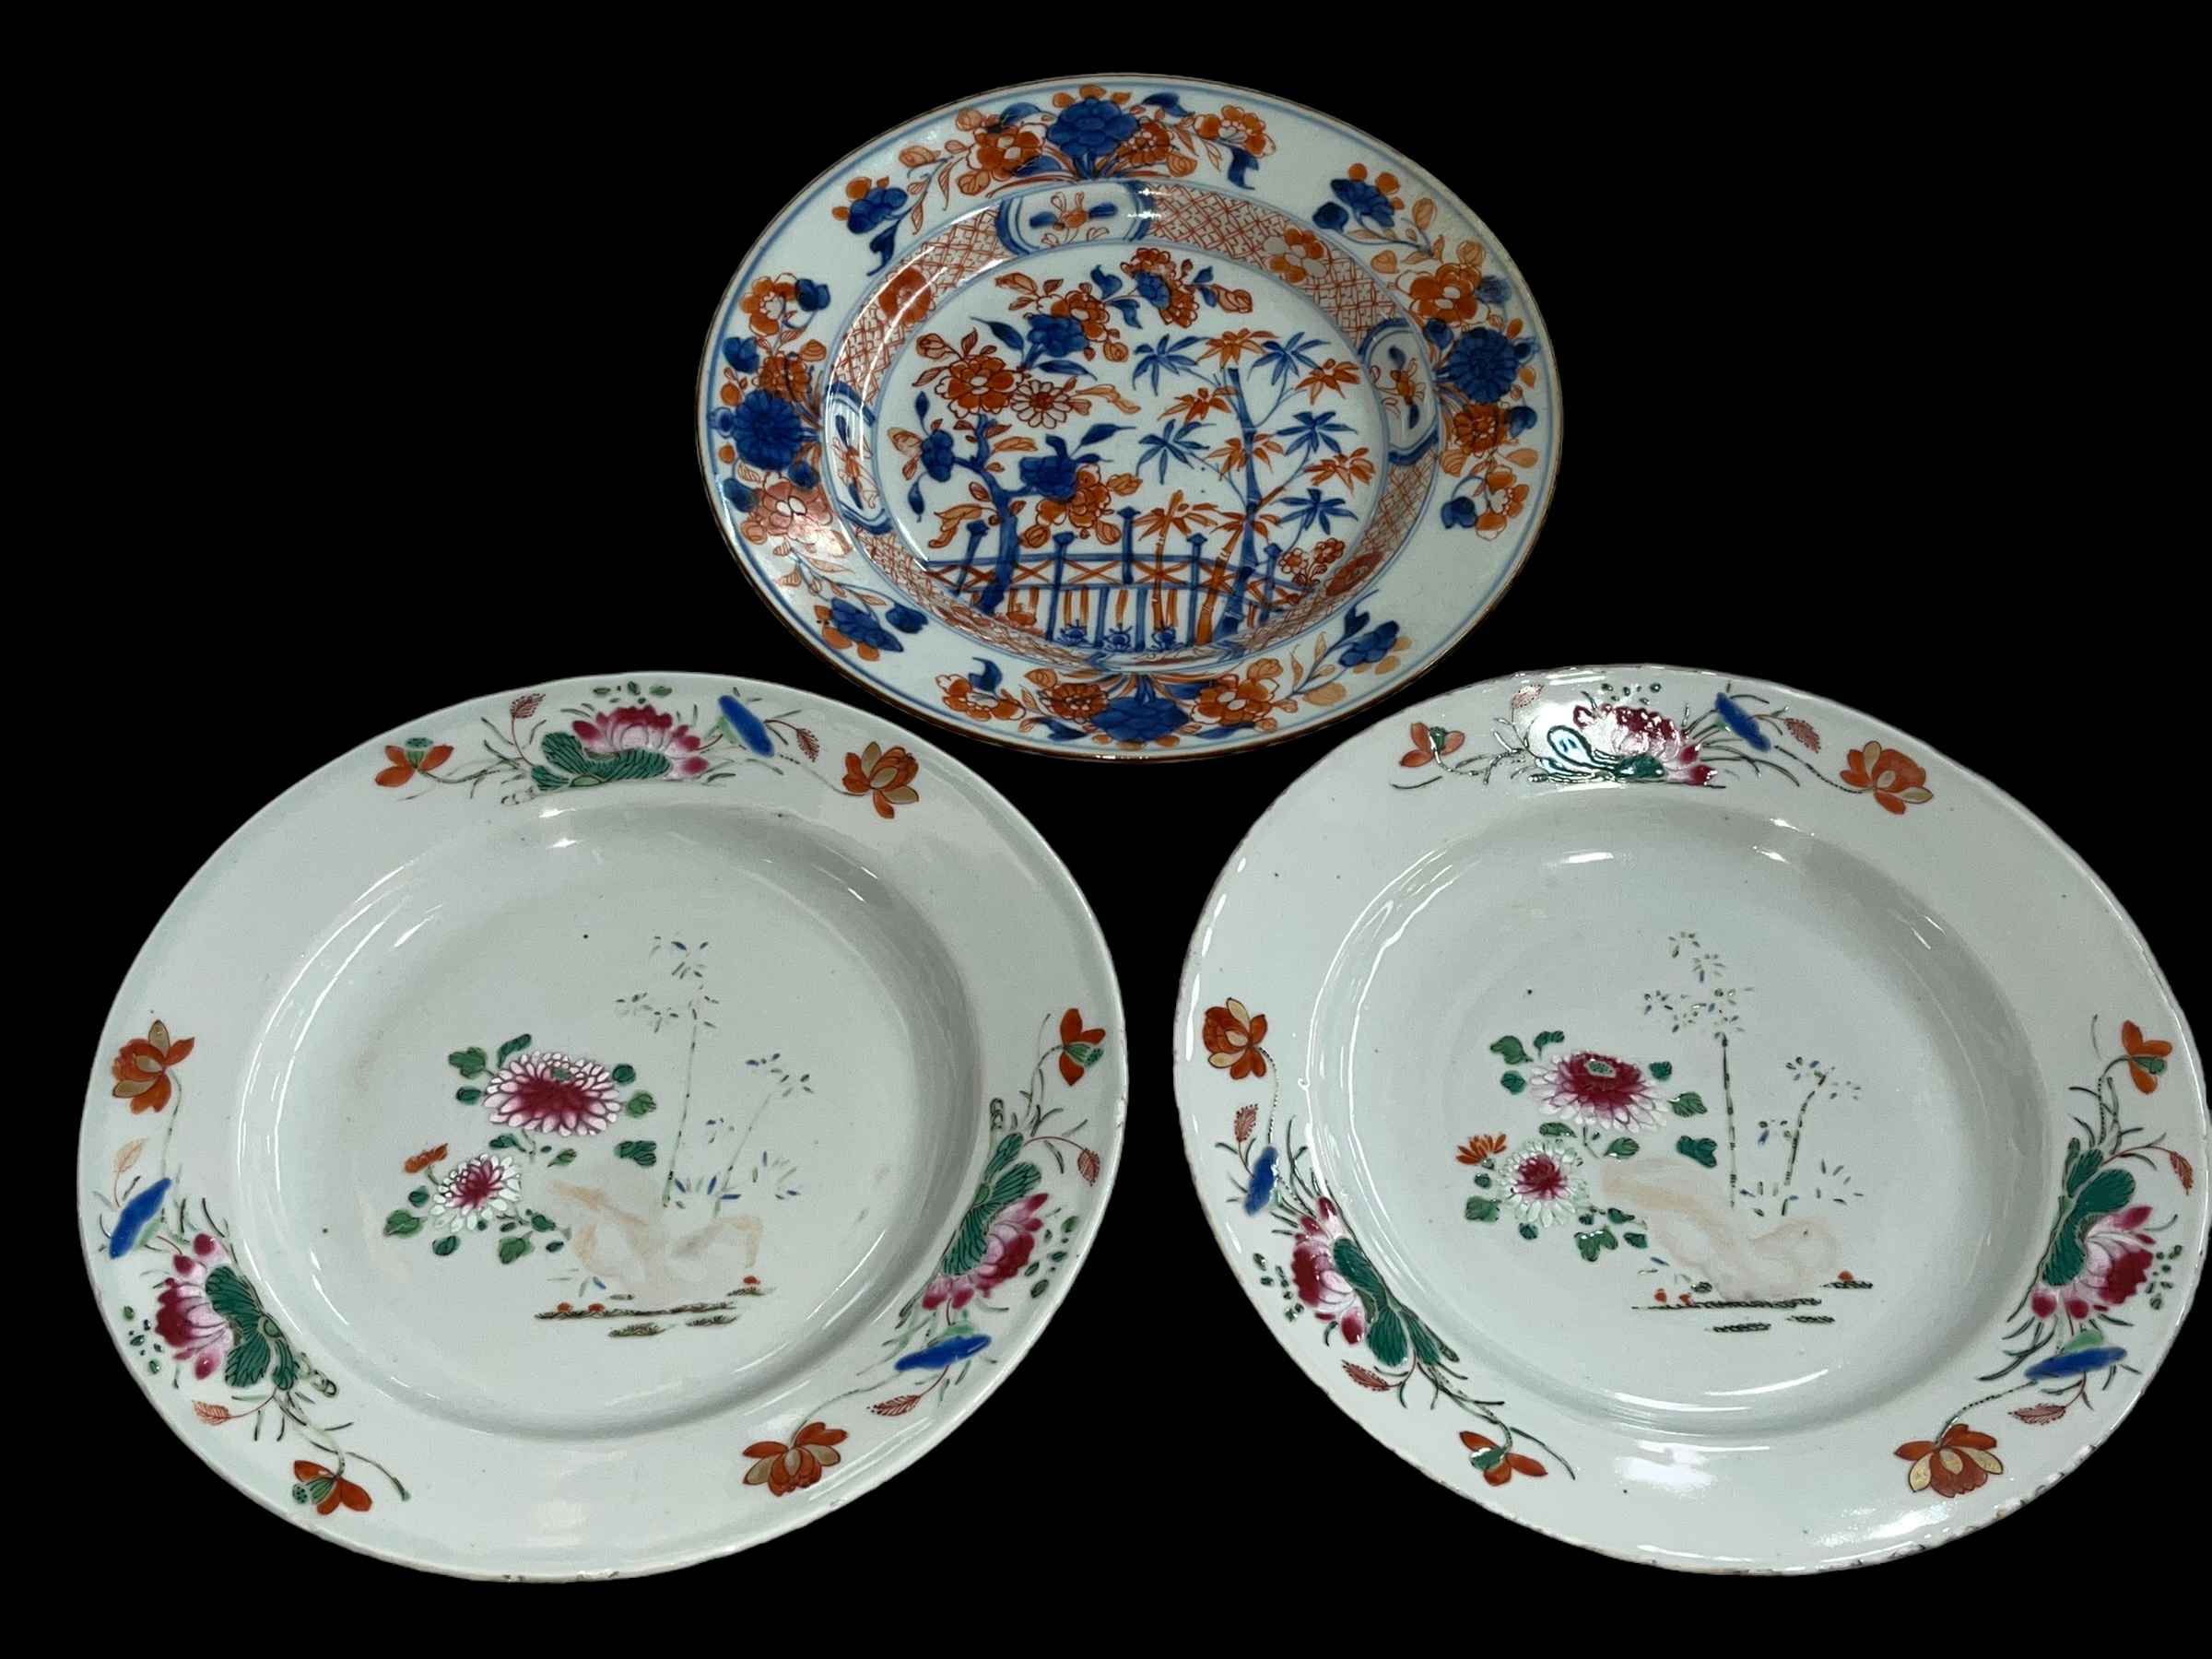 18th Century Imari plate and pair of 18th Century Chinese plates.